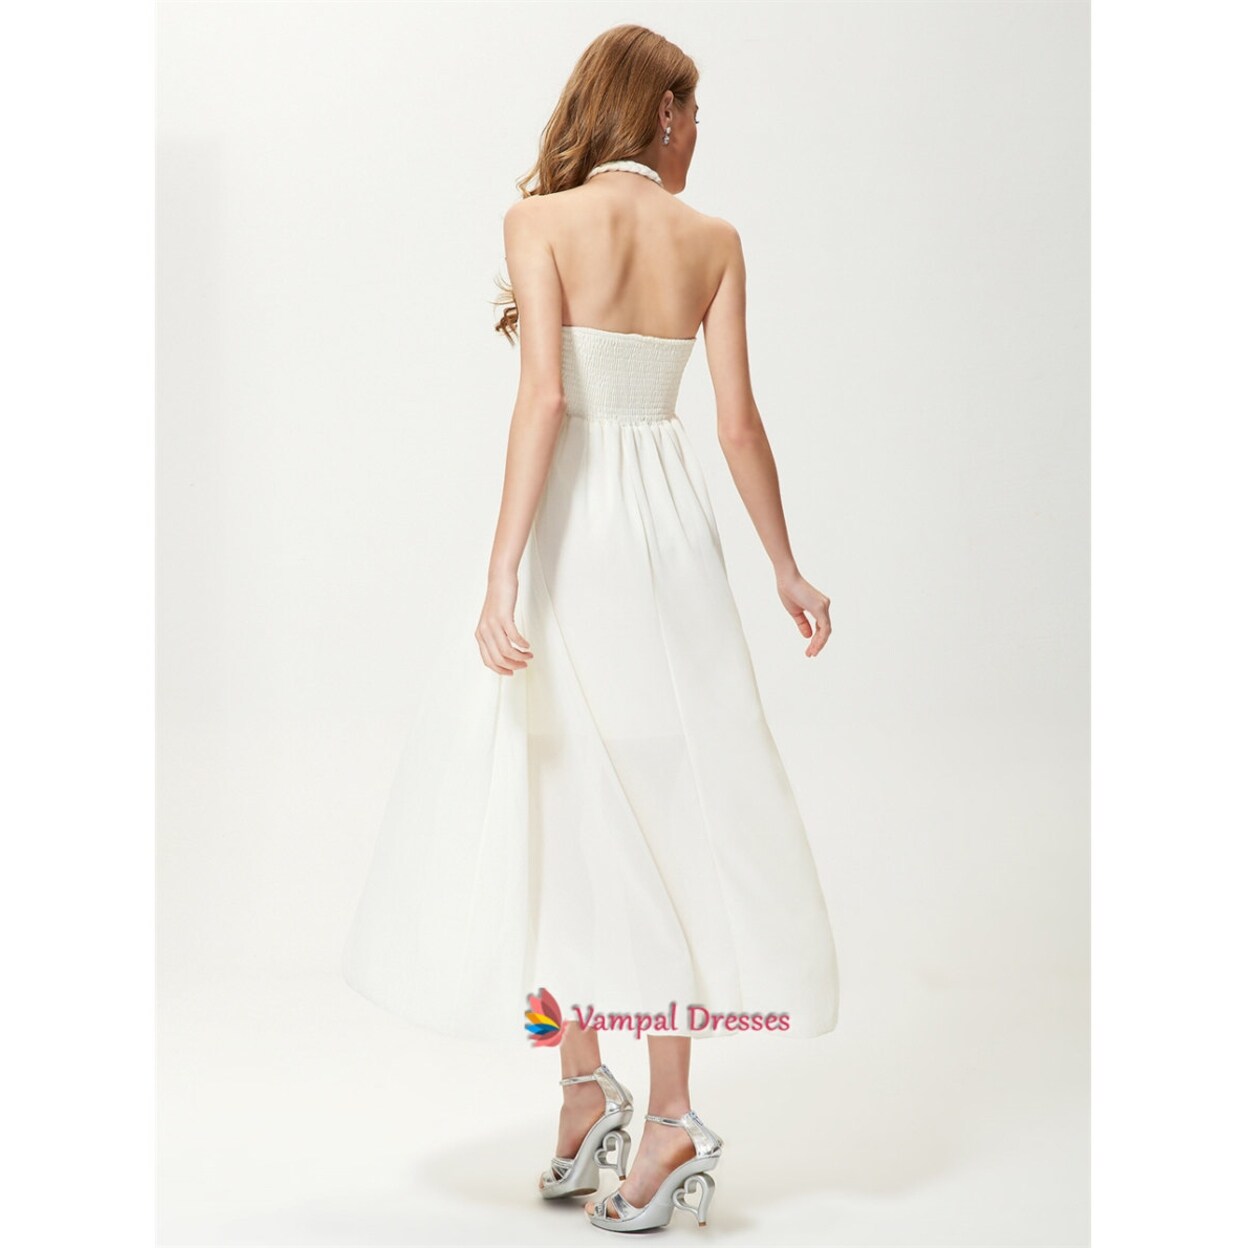 white halter neck summer dress